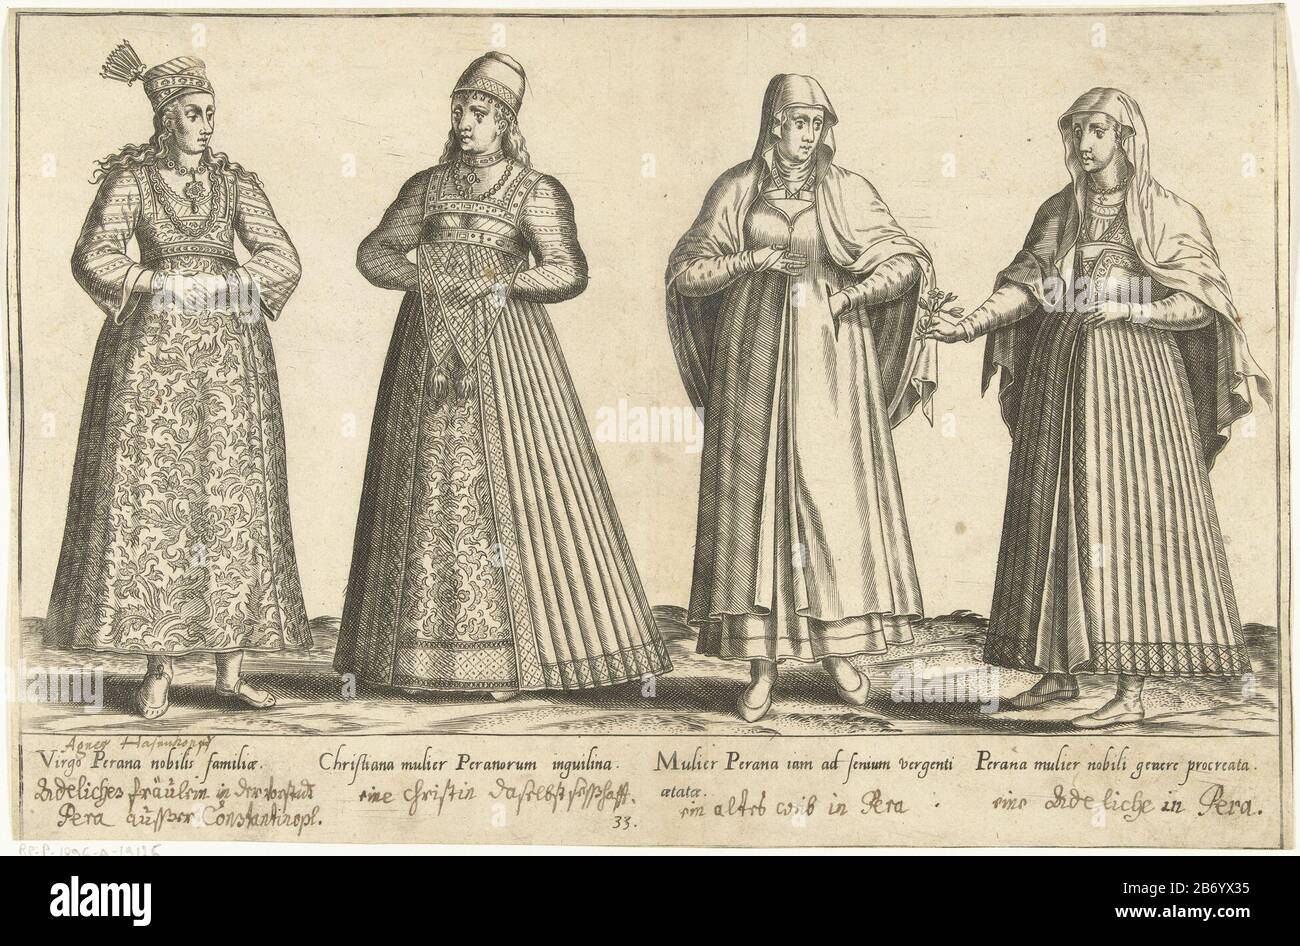 Kleding van vrouwen uit Constantinopel rond 1580 Traditionele kleding van  over de hele wereld rond 1580 (servietitel) Imprimer un livre sur les  vêtements du XVIe siècle vers 1580. Quatre femmes du district